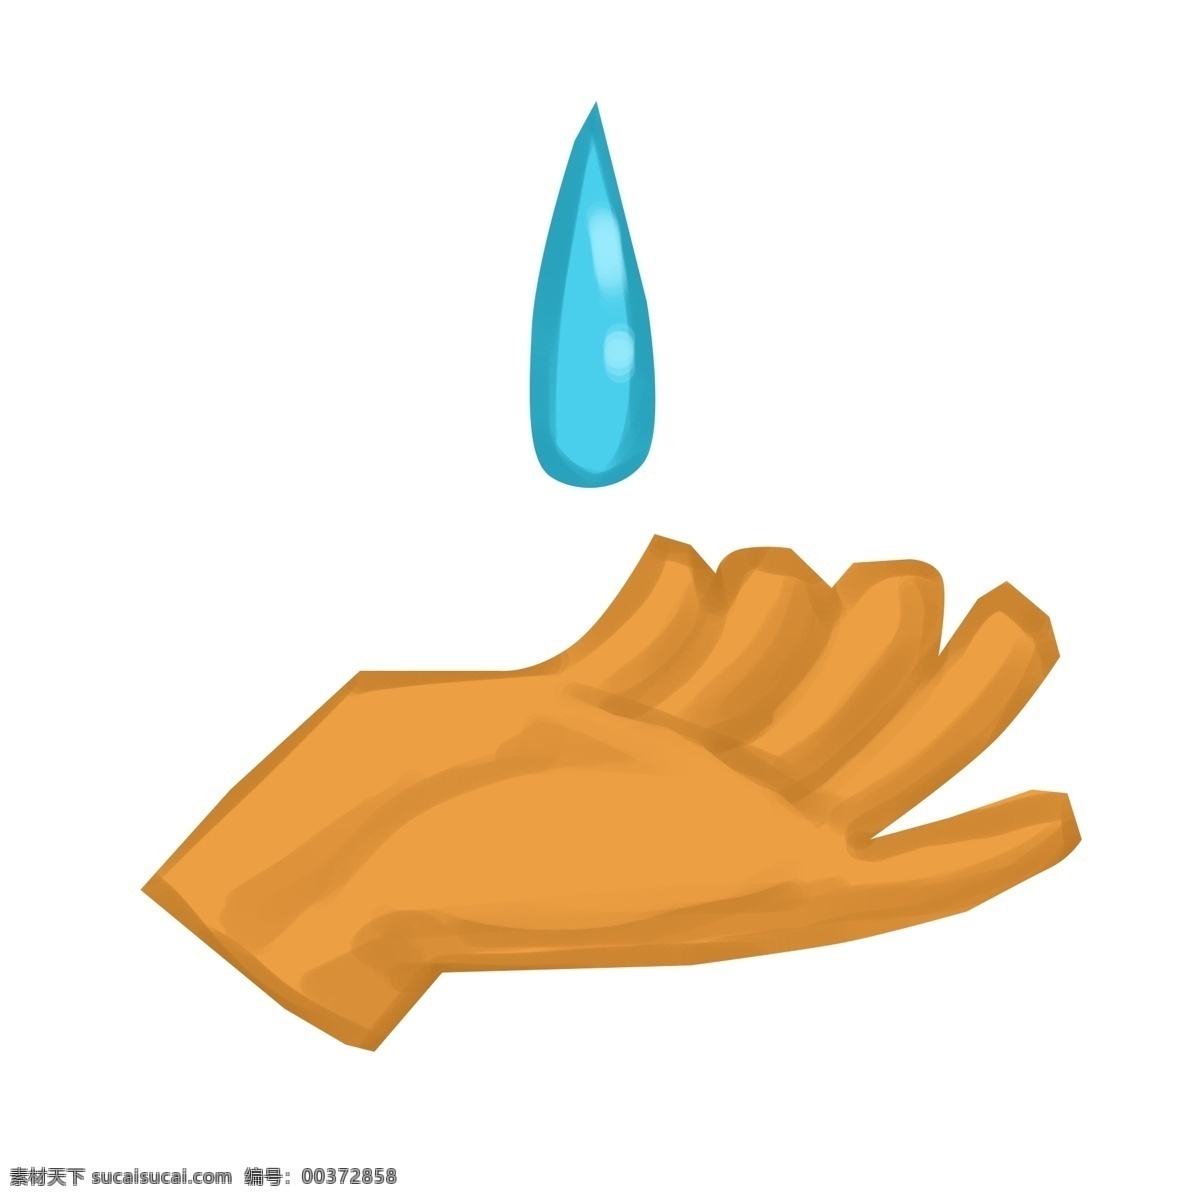 珍惜 水资源 手势 珍惜水资源 手势插画 蓝色的水滴 黄色的手掌 卡通手势插画 创意手势插画